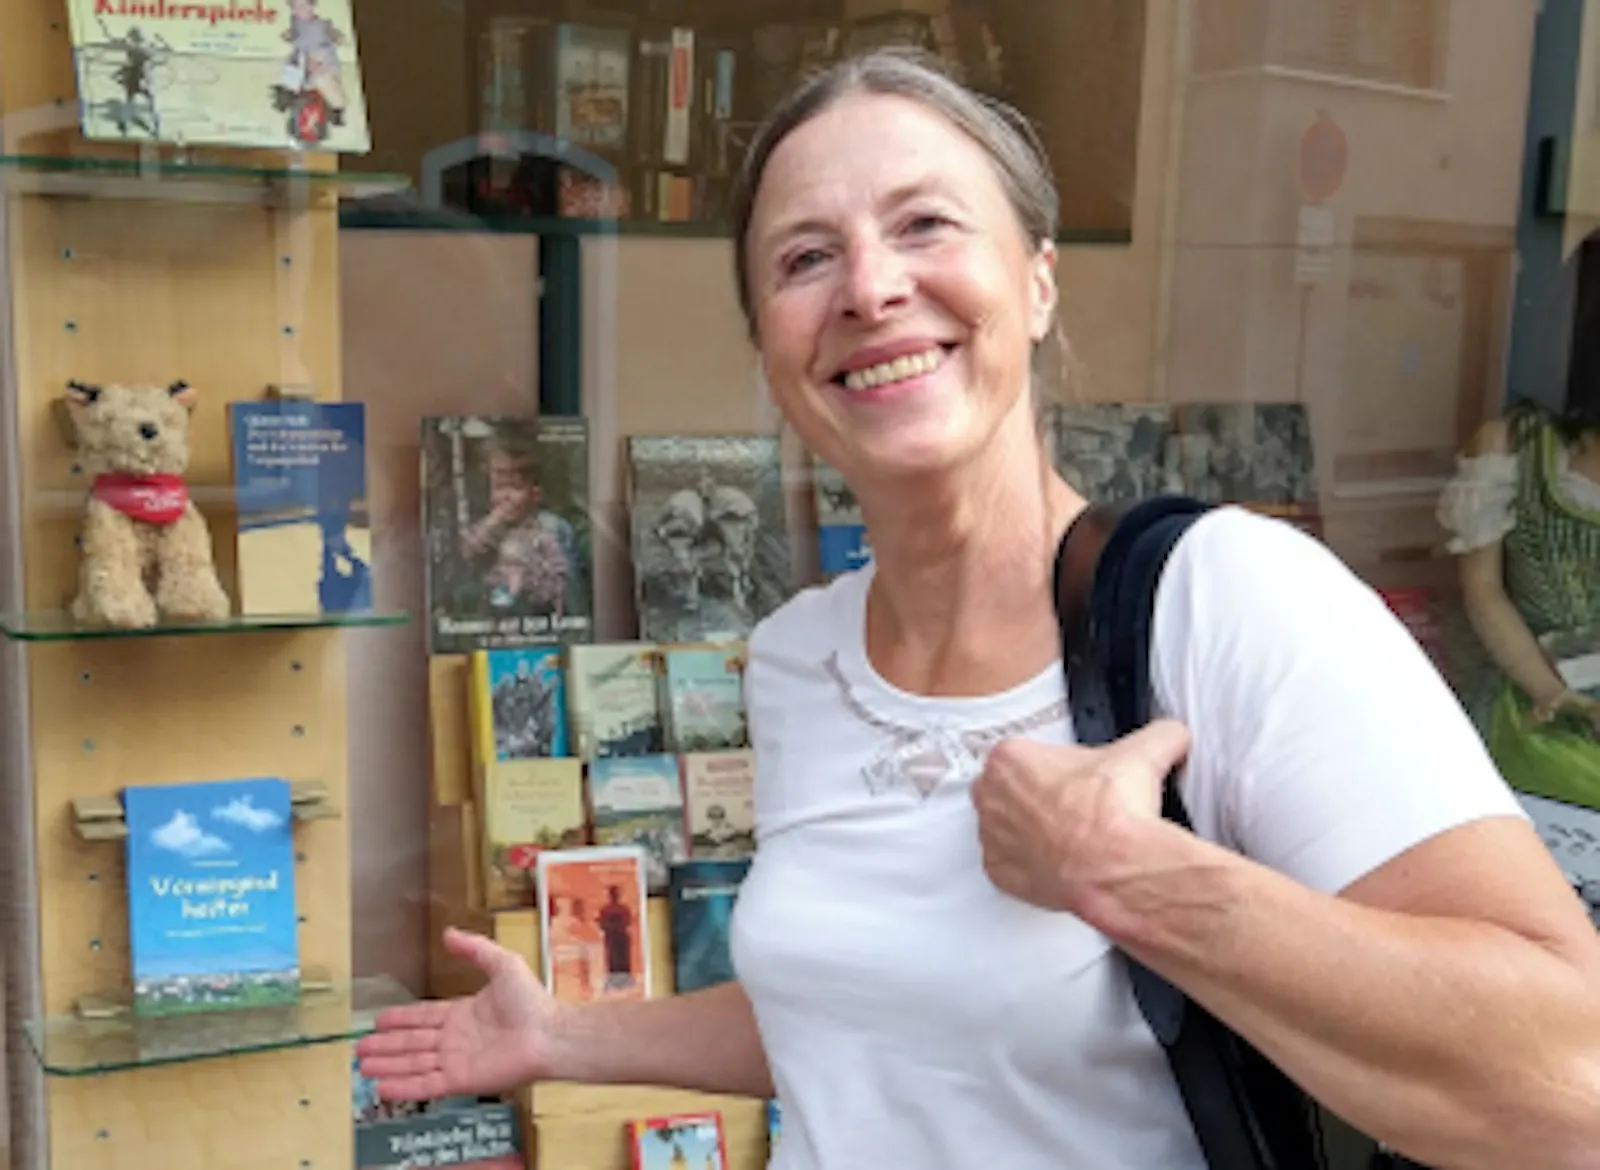 Steffi Zachmeier weist auf das neue Buch "Vorwiegend heiter" in einem Schaufenster mit noch anderen Büchern